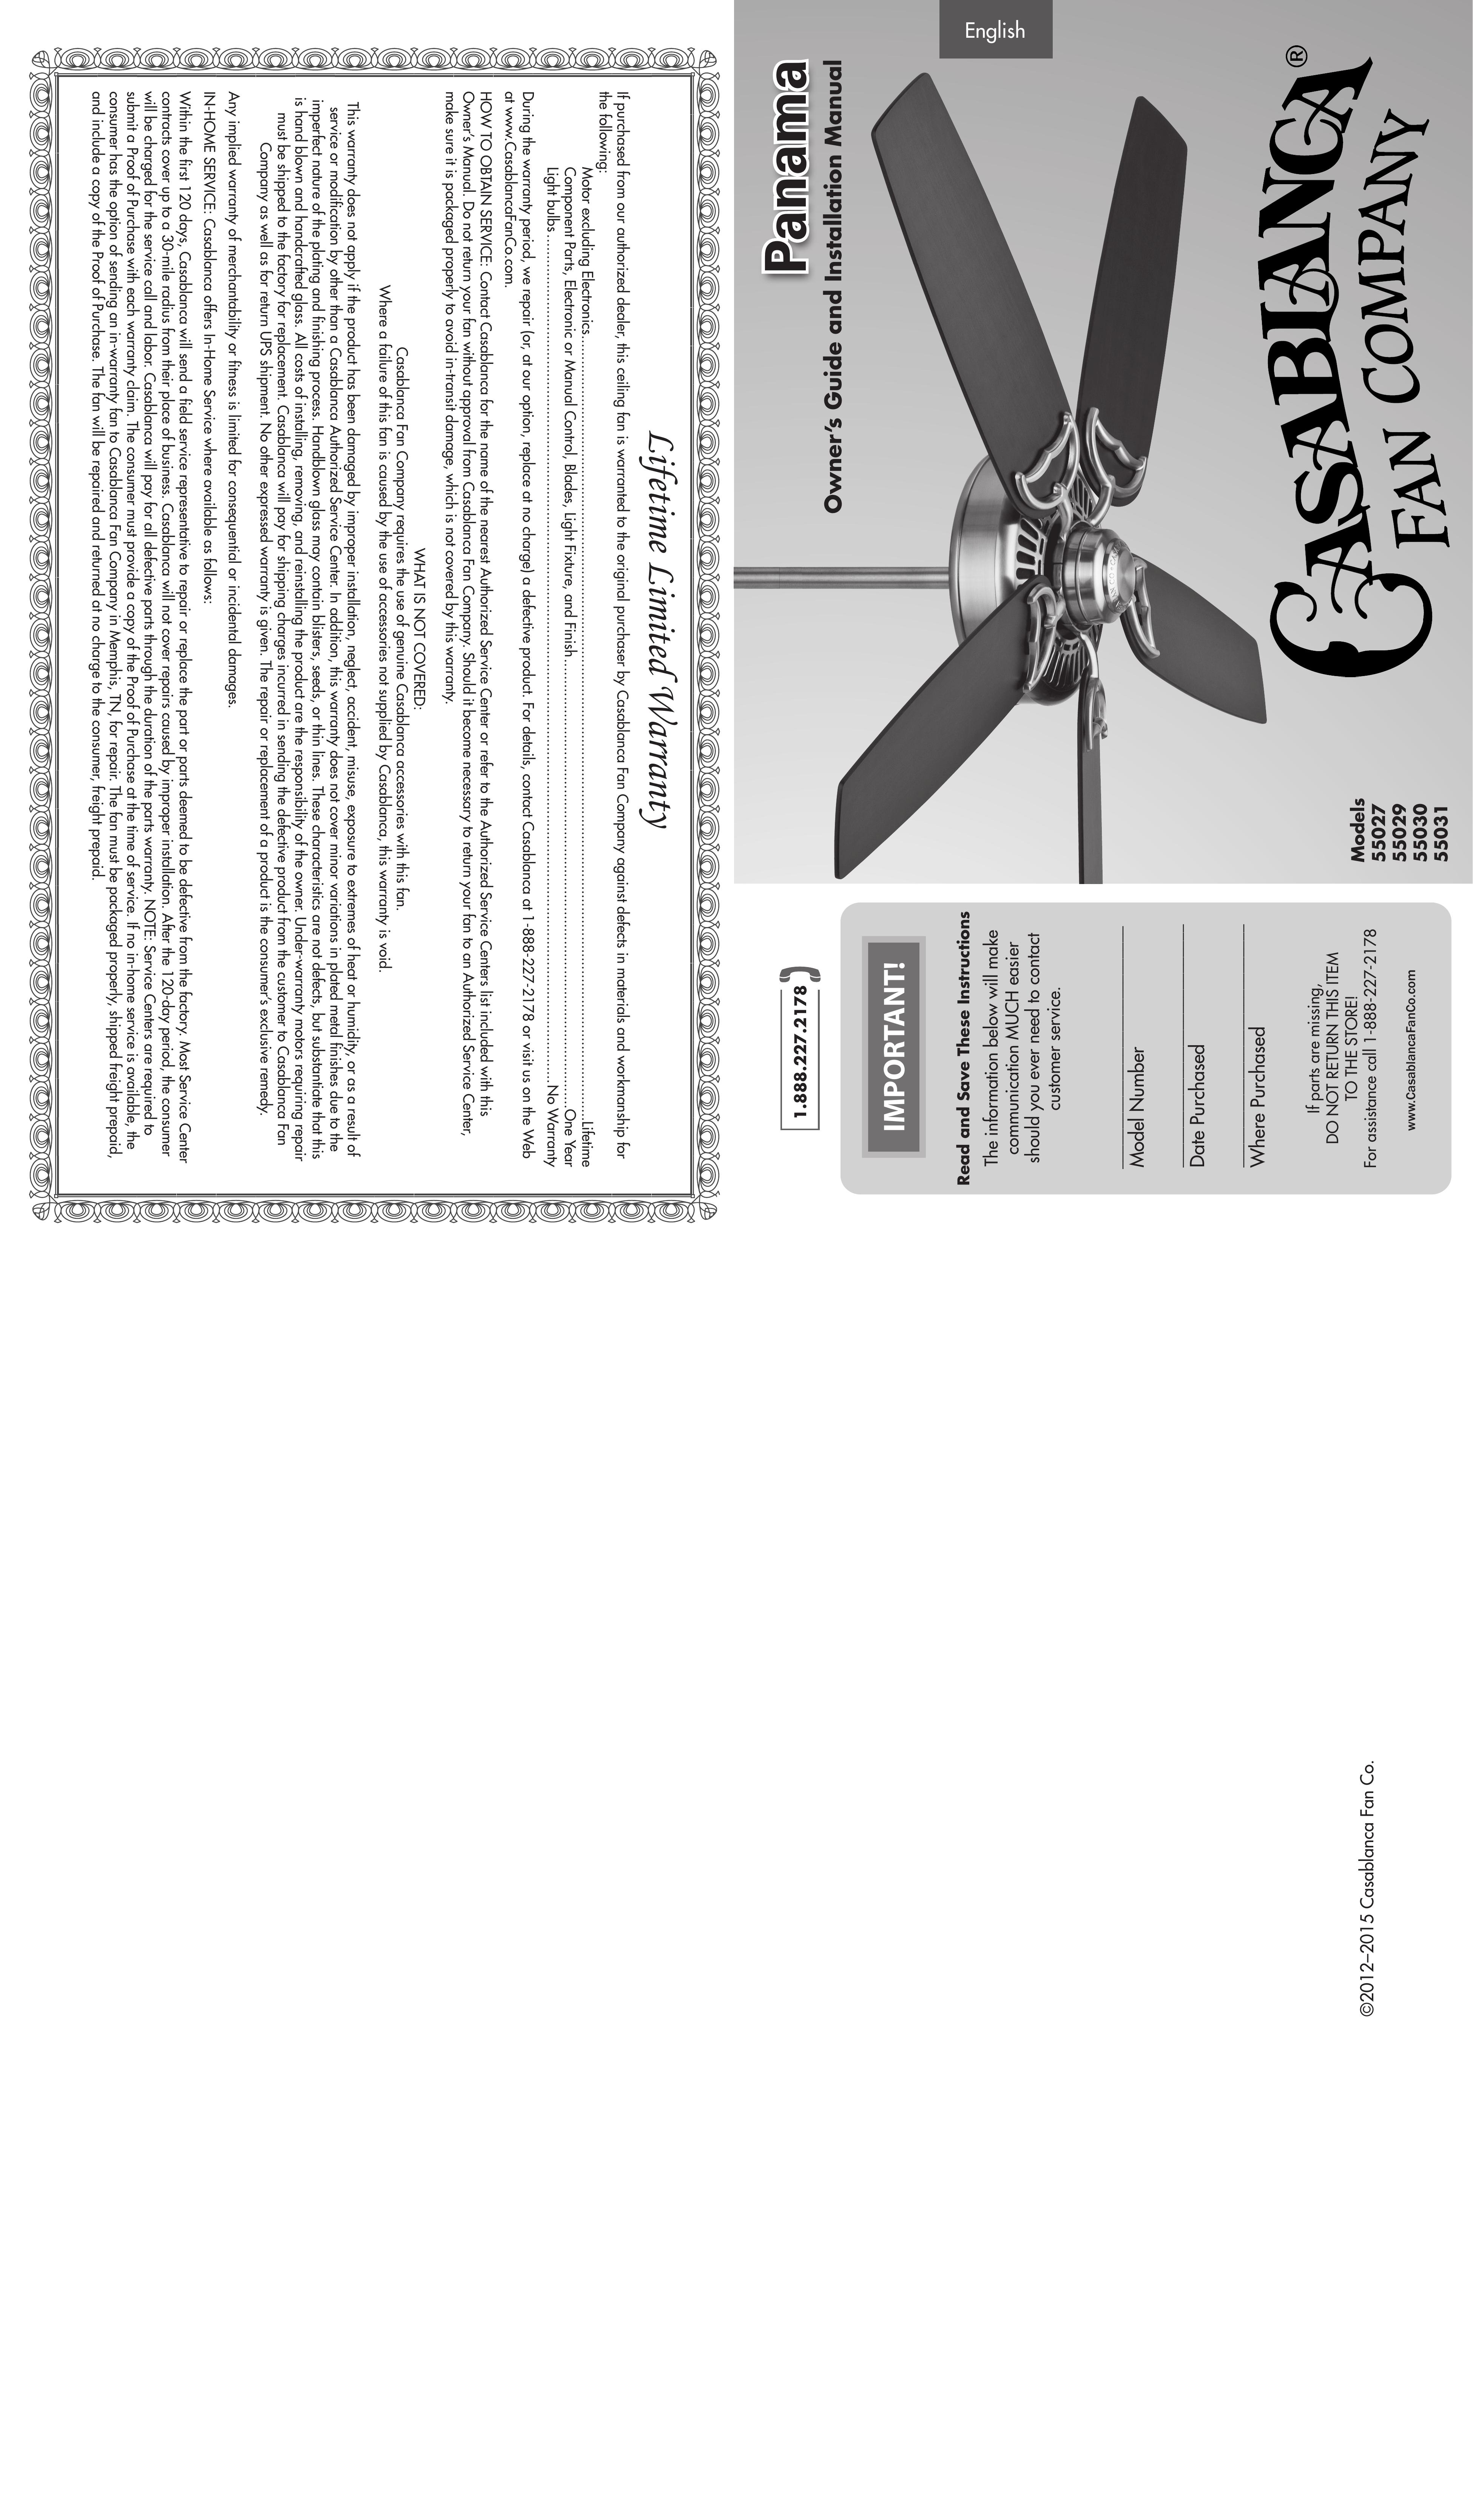 Casablanca Fan Company 55027 Outdoor Ceiling Fan User Manual